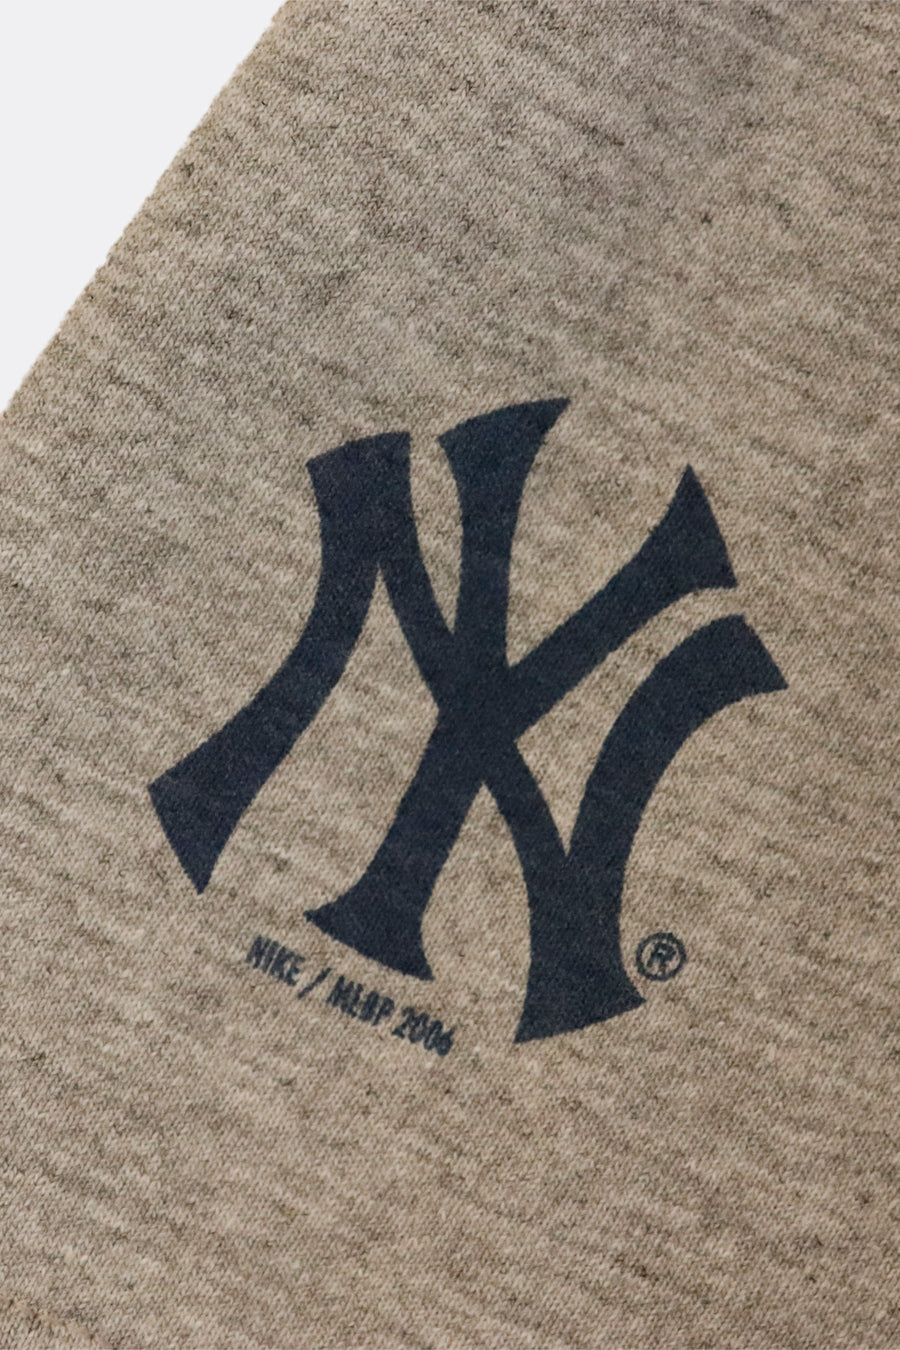 Vintage Nike New York Block Letters T Shirt Sz XL